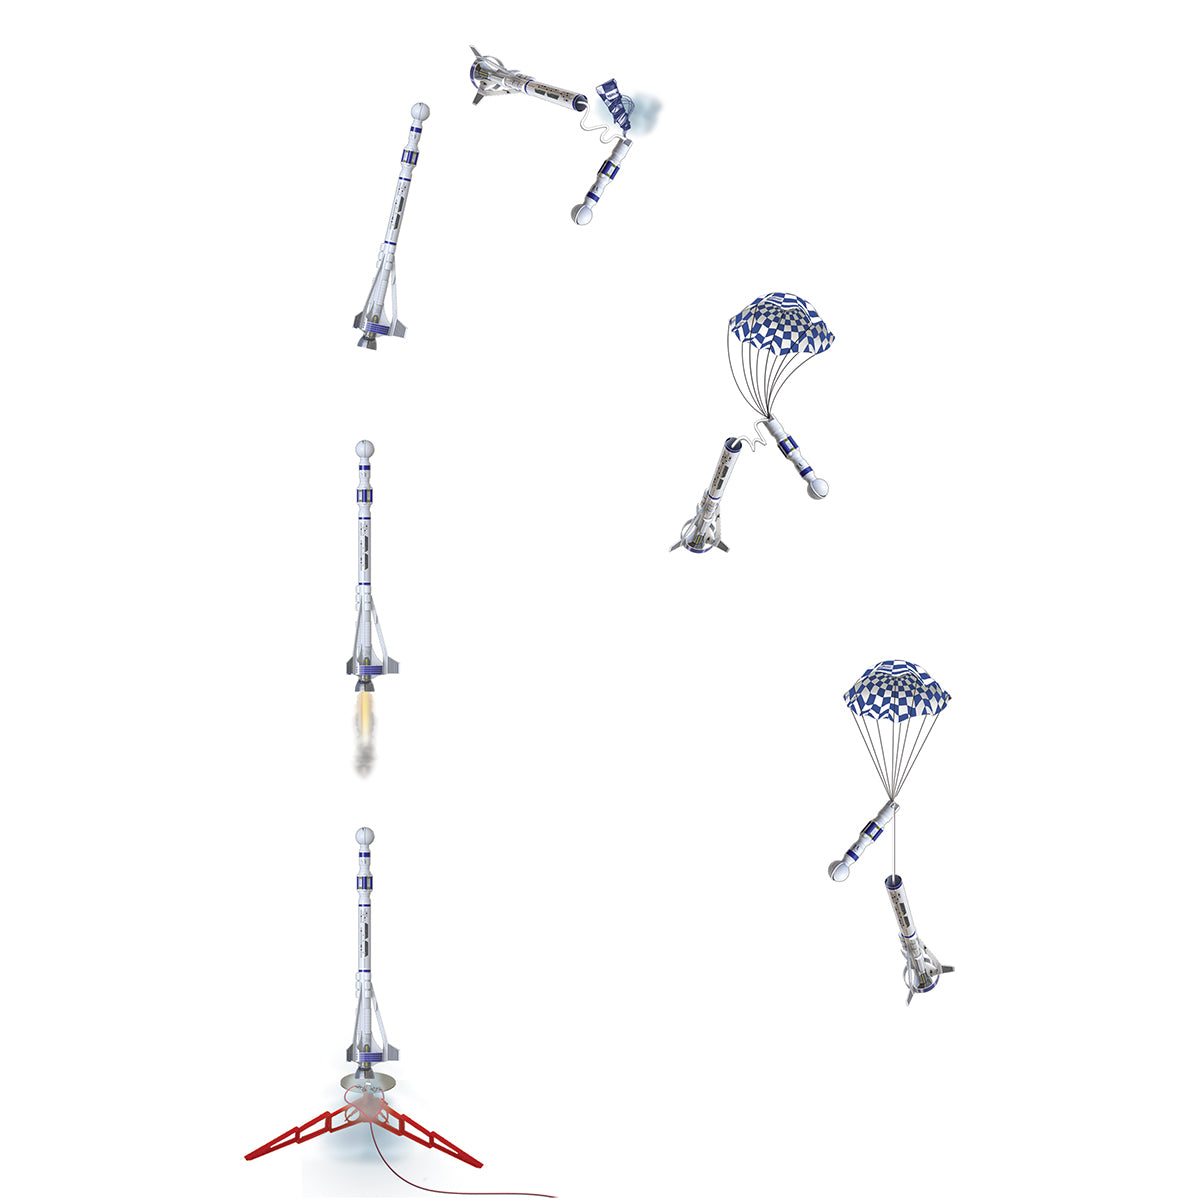 Model Rocket Flight Sequence